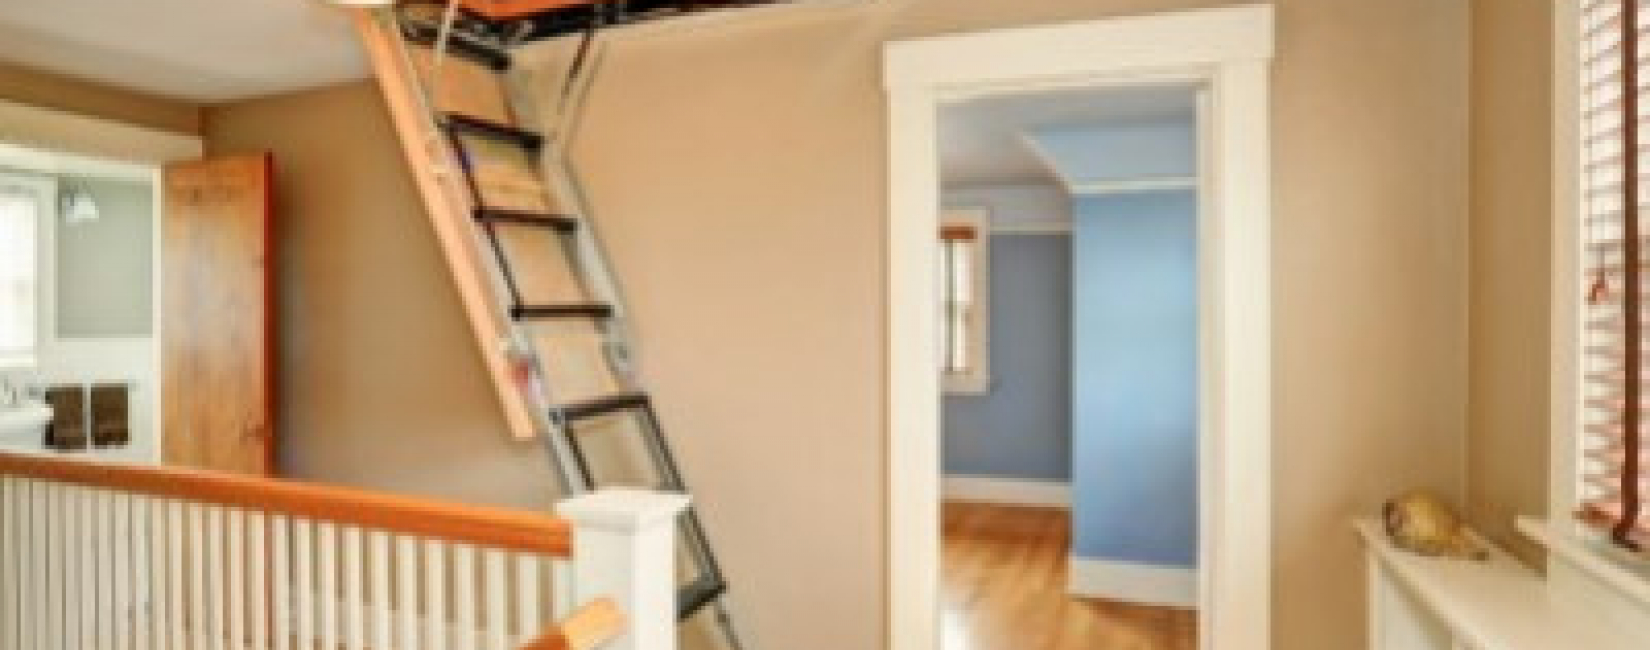 Jak zabezpieczyć schody strychowe?